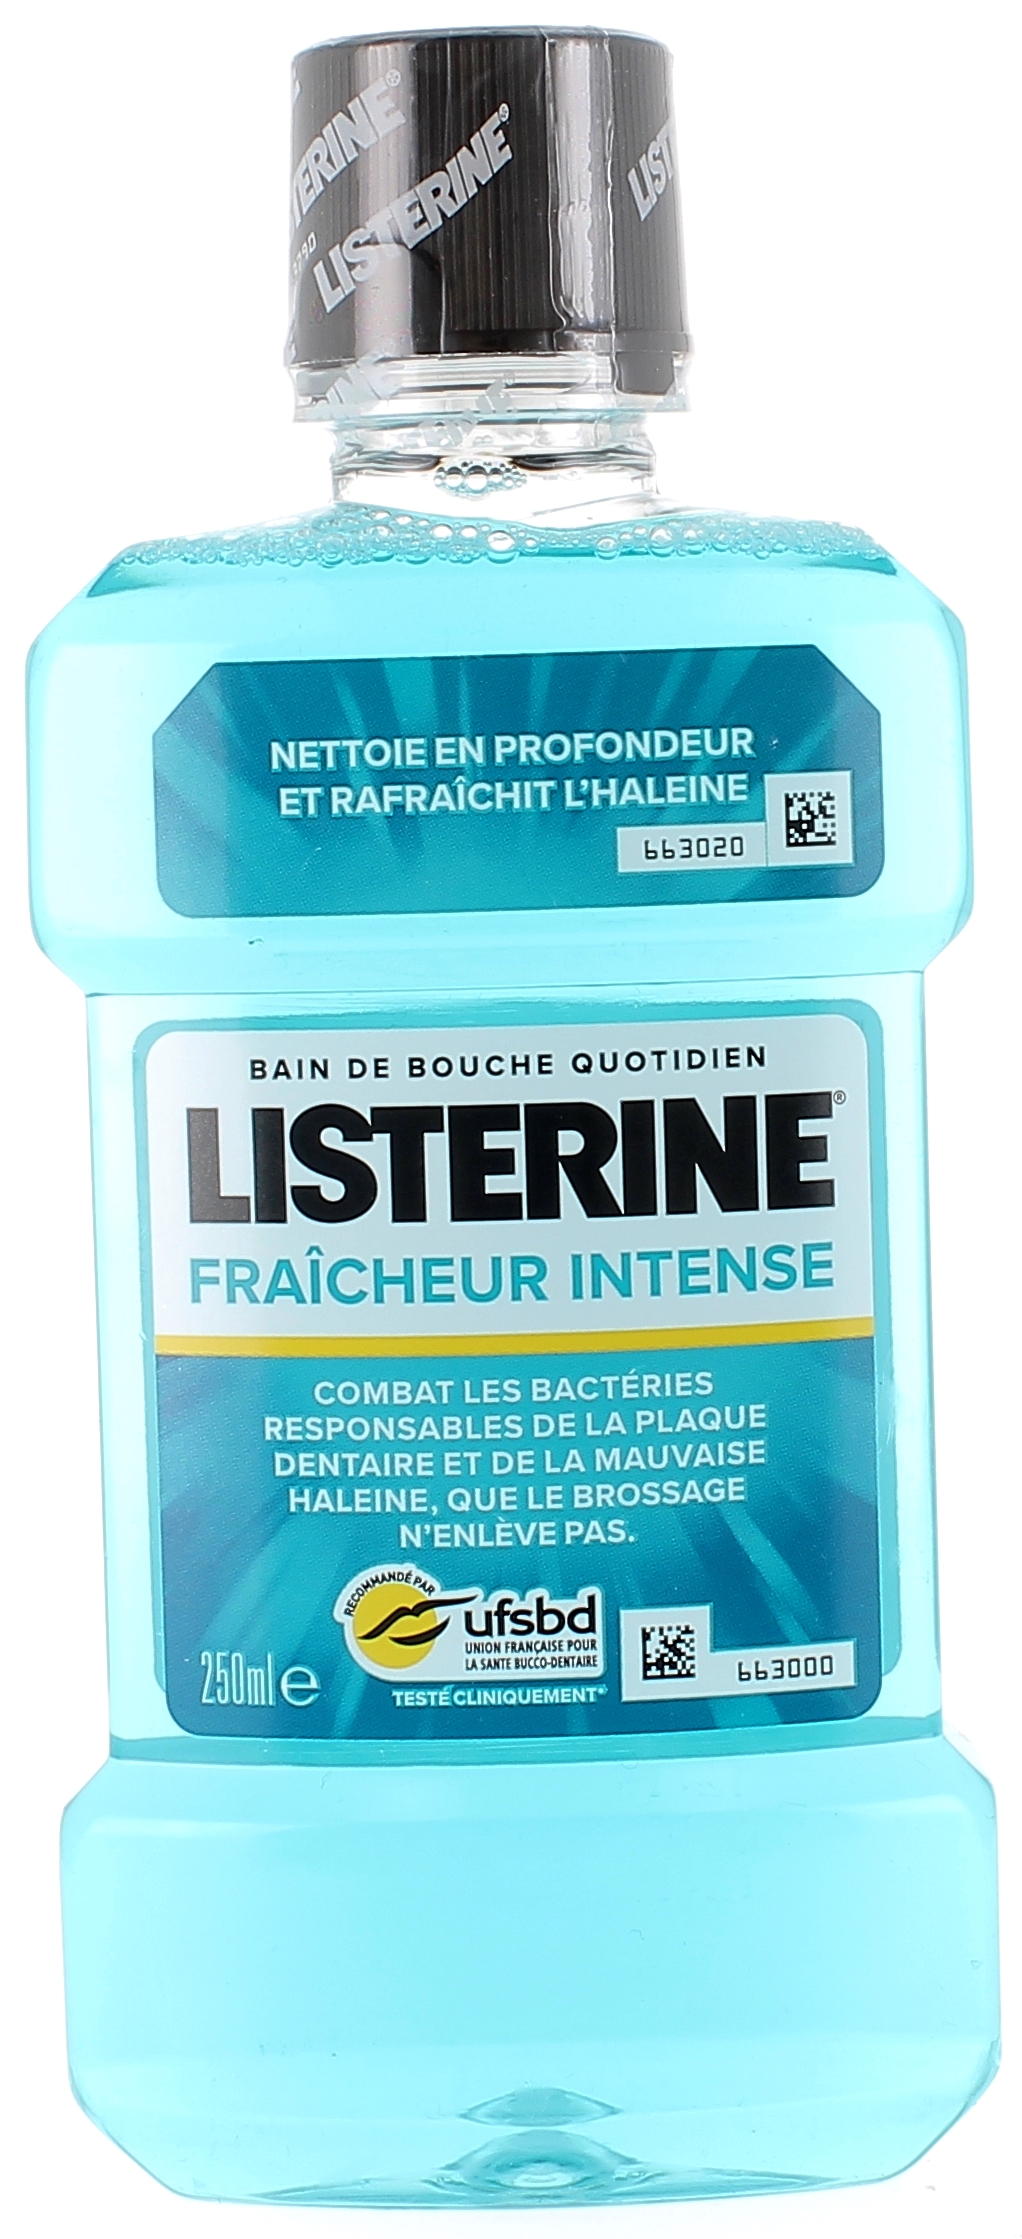 Listérine fraîcheur intense bain de bouche quotidien - flacon de 250 ml